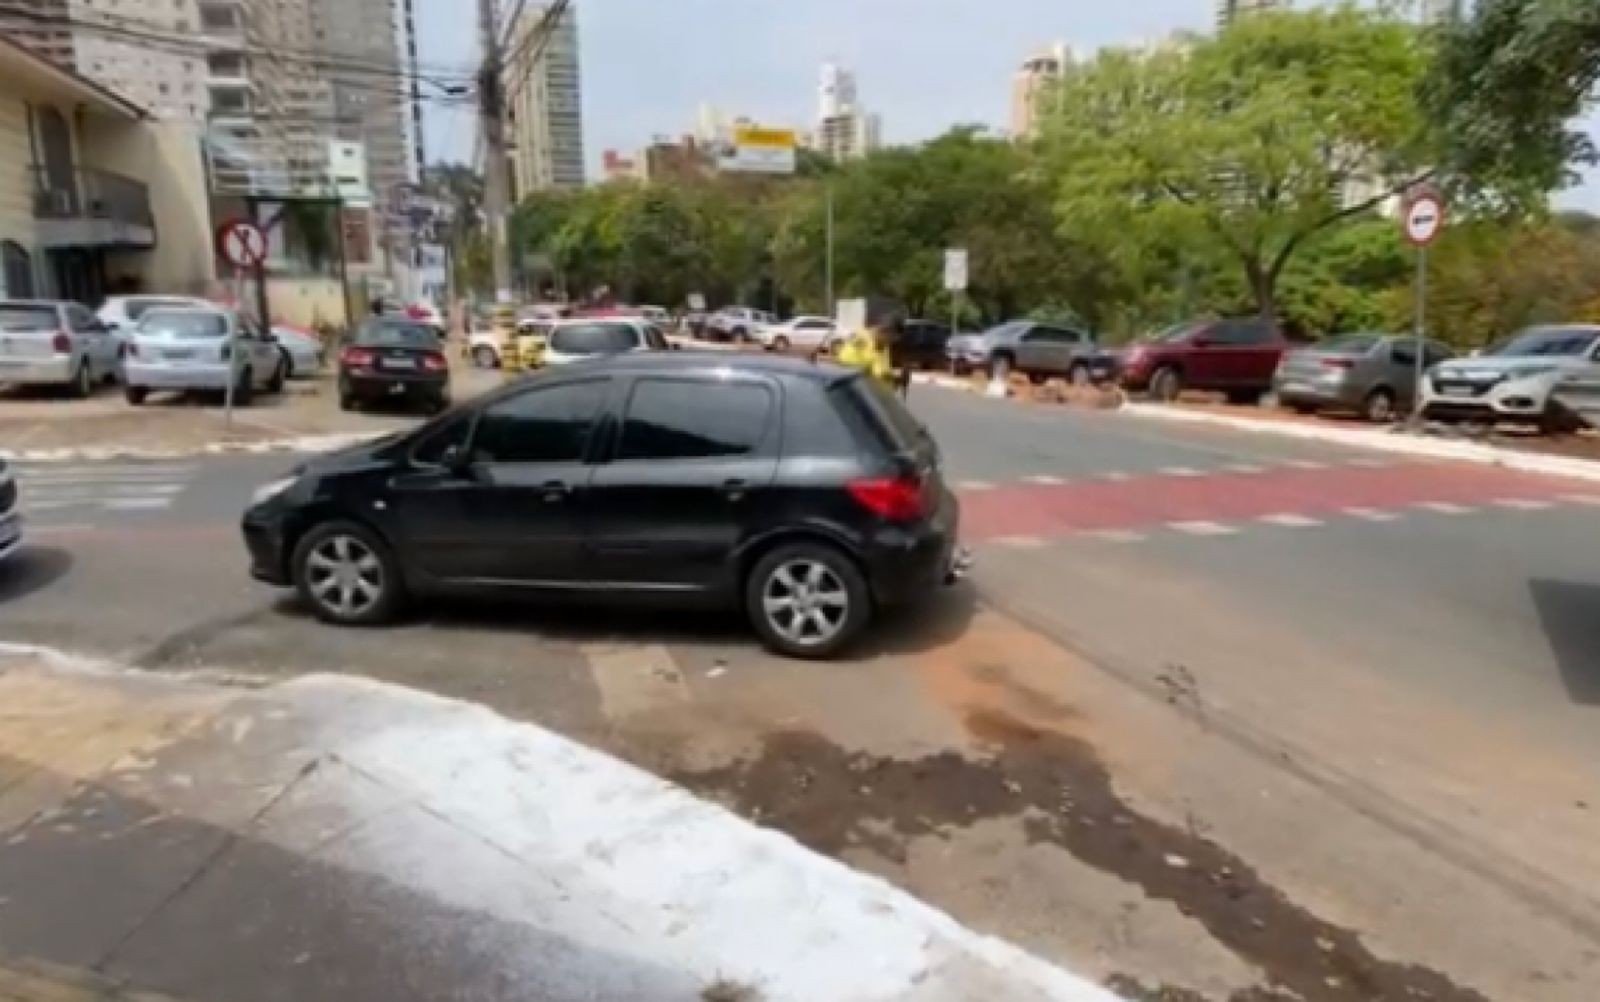 Agentes flagram carro parado em local proibido com quase R$ 100 mil em multas, em Goiânia